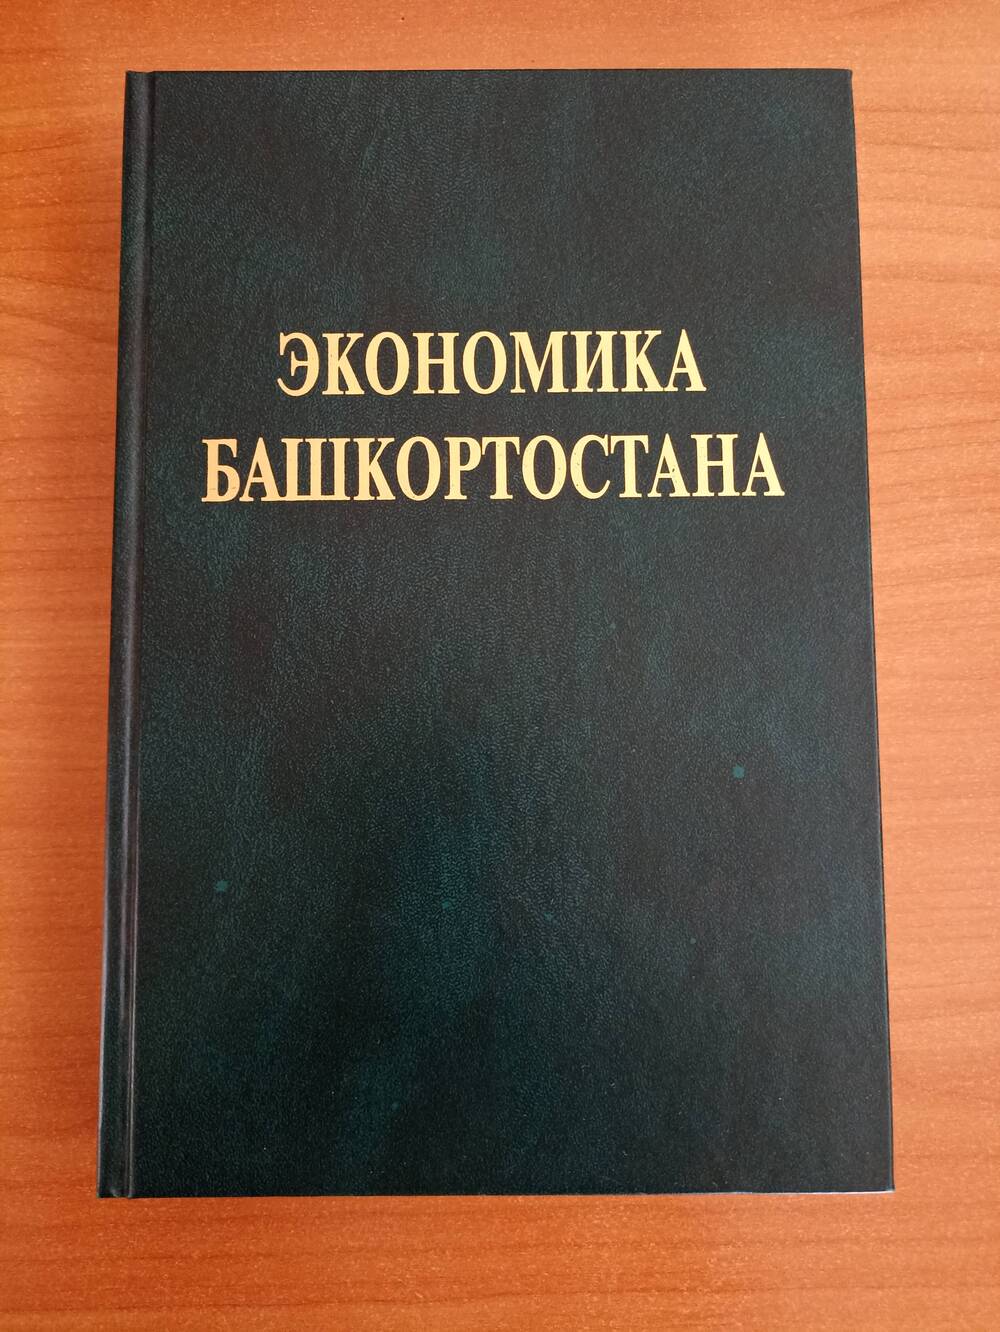 Книга «Экономика Башкортостана»